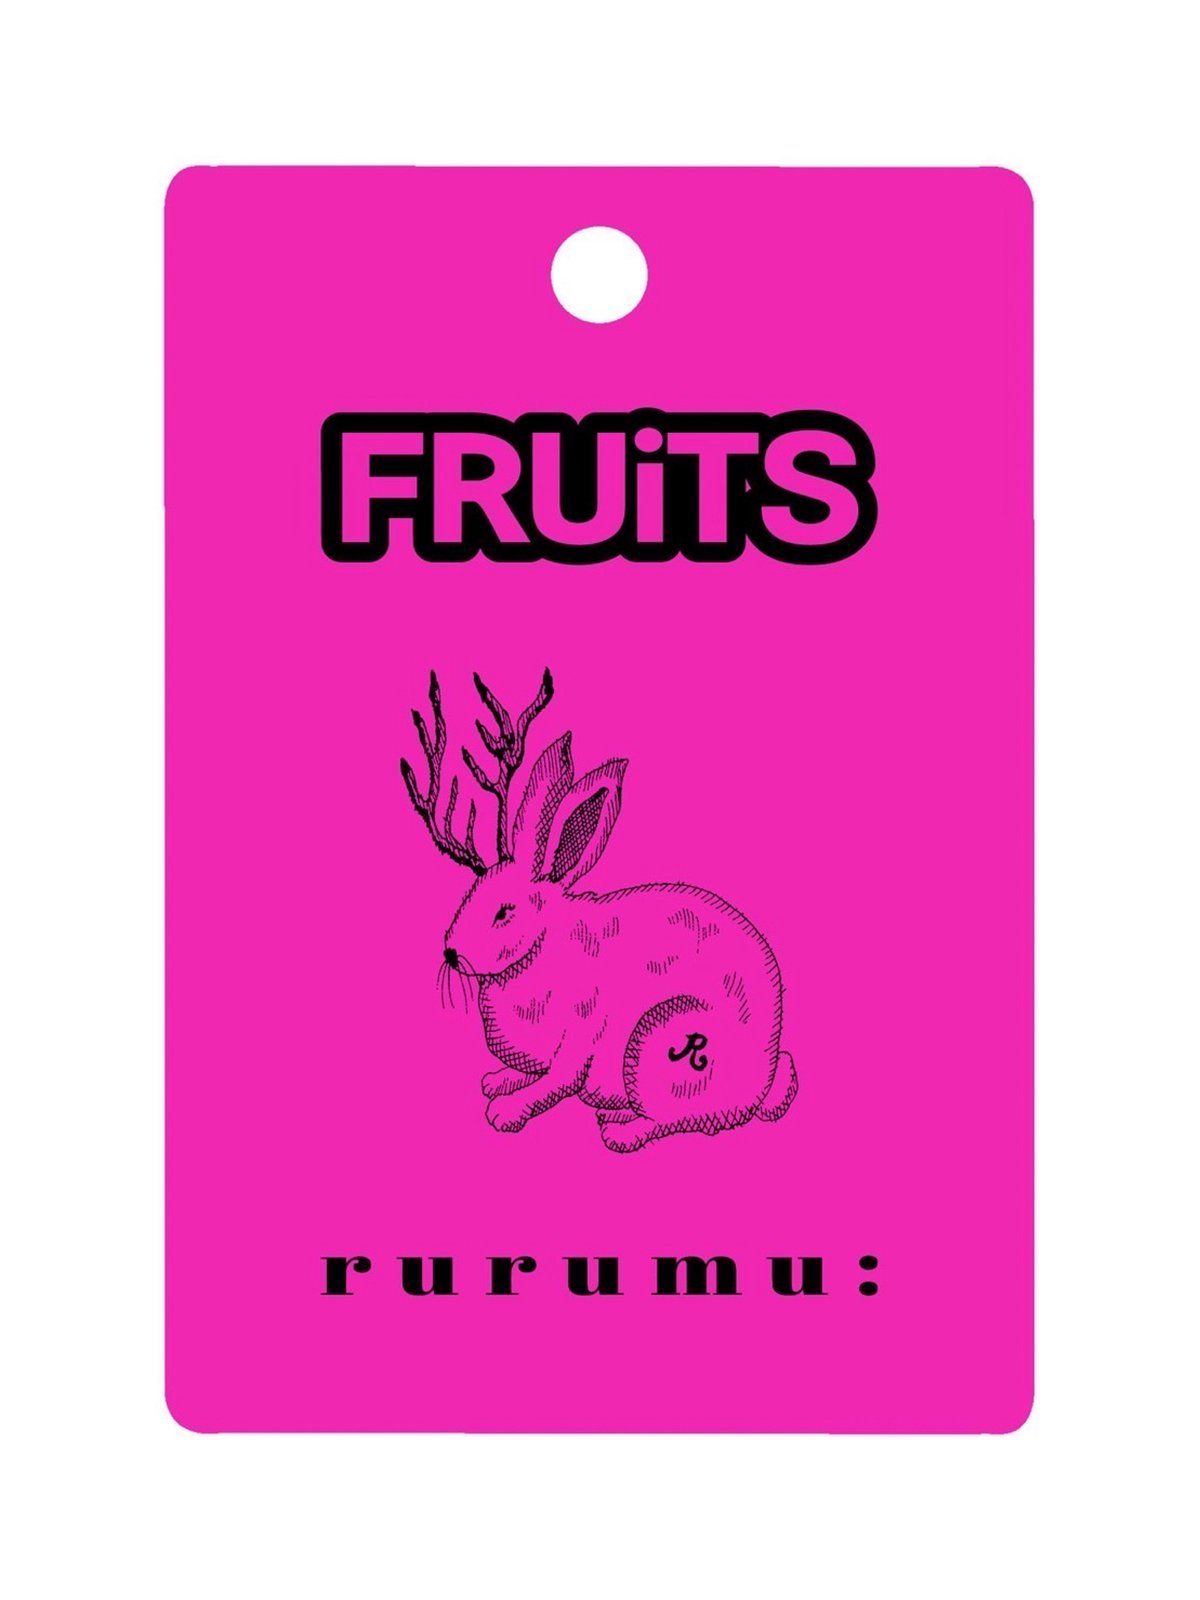 雑誌「フルーツ」とルルムウがコラボレーションしたロゴ